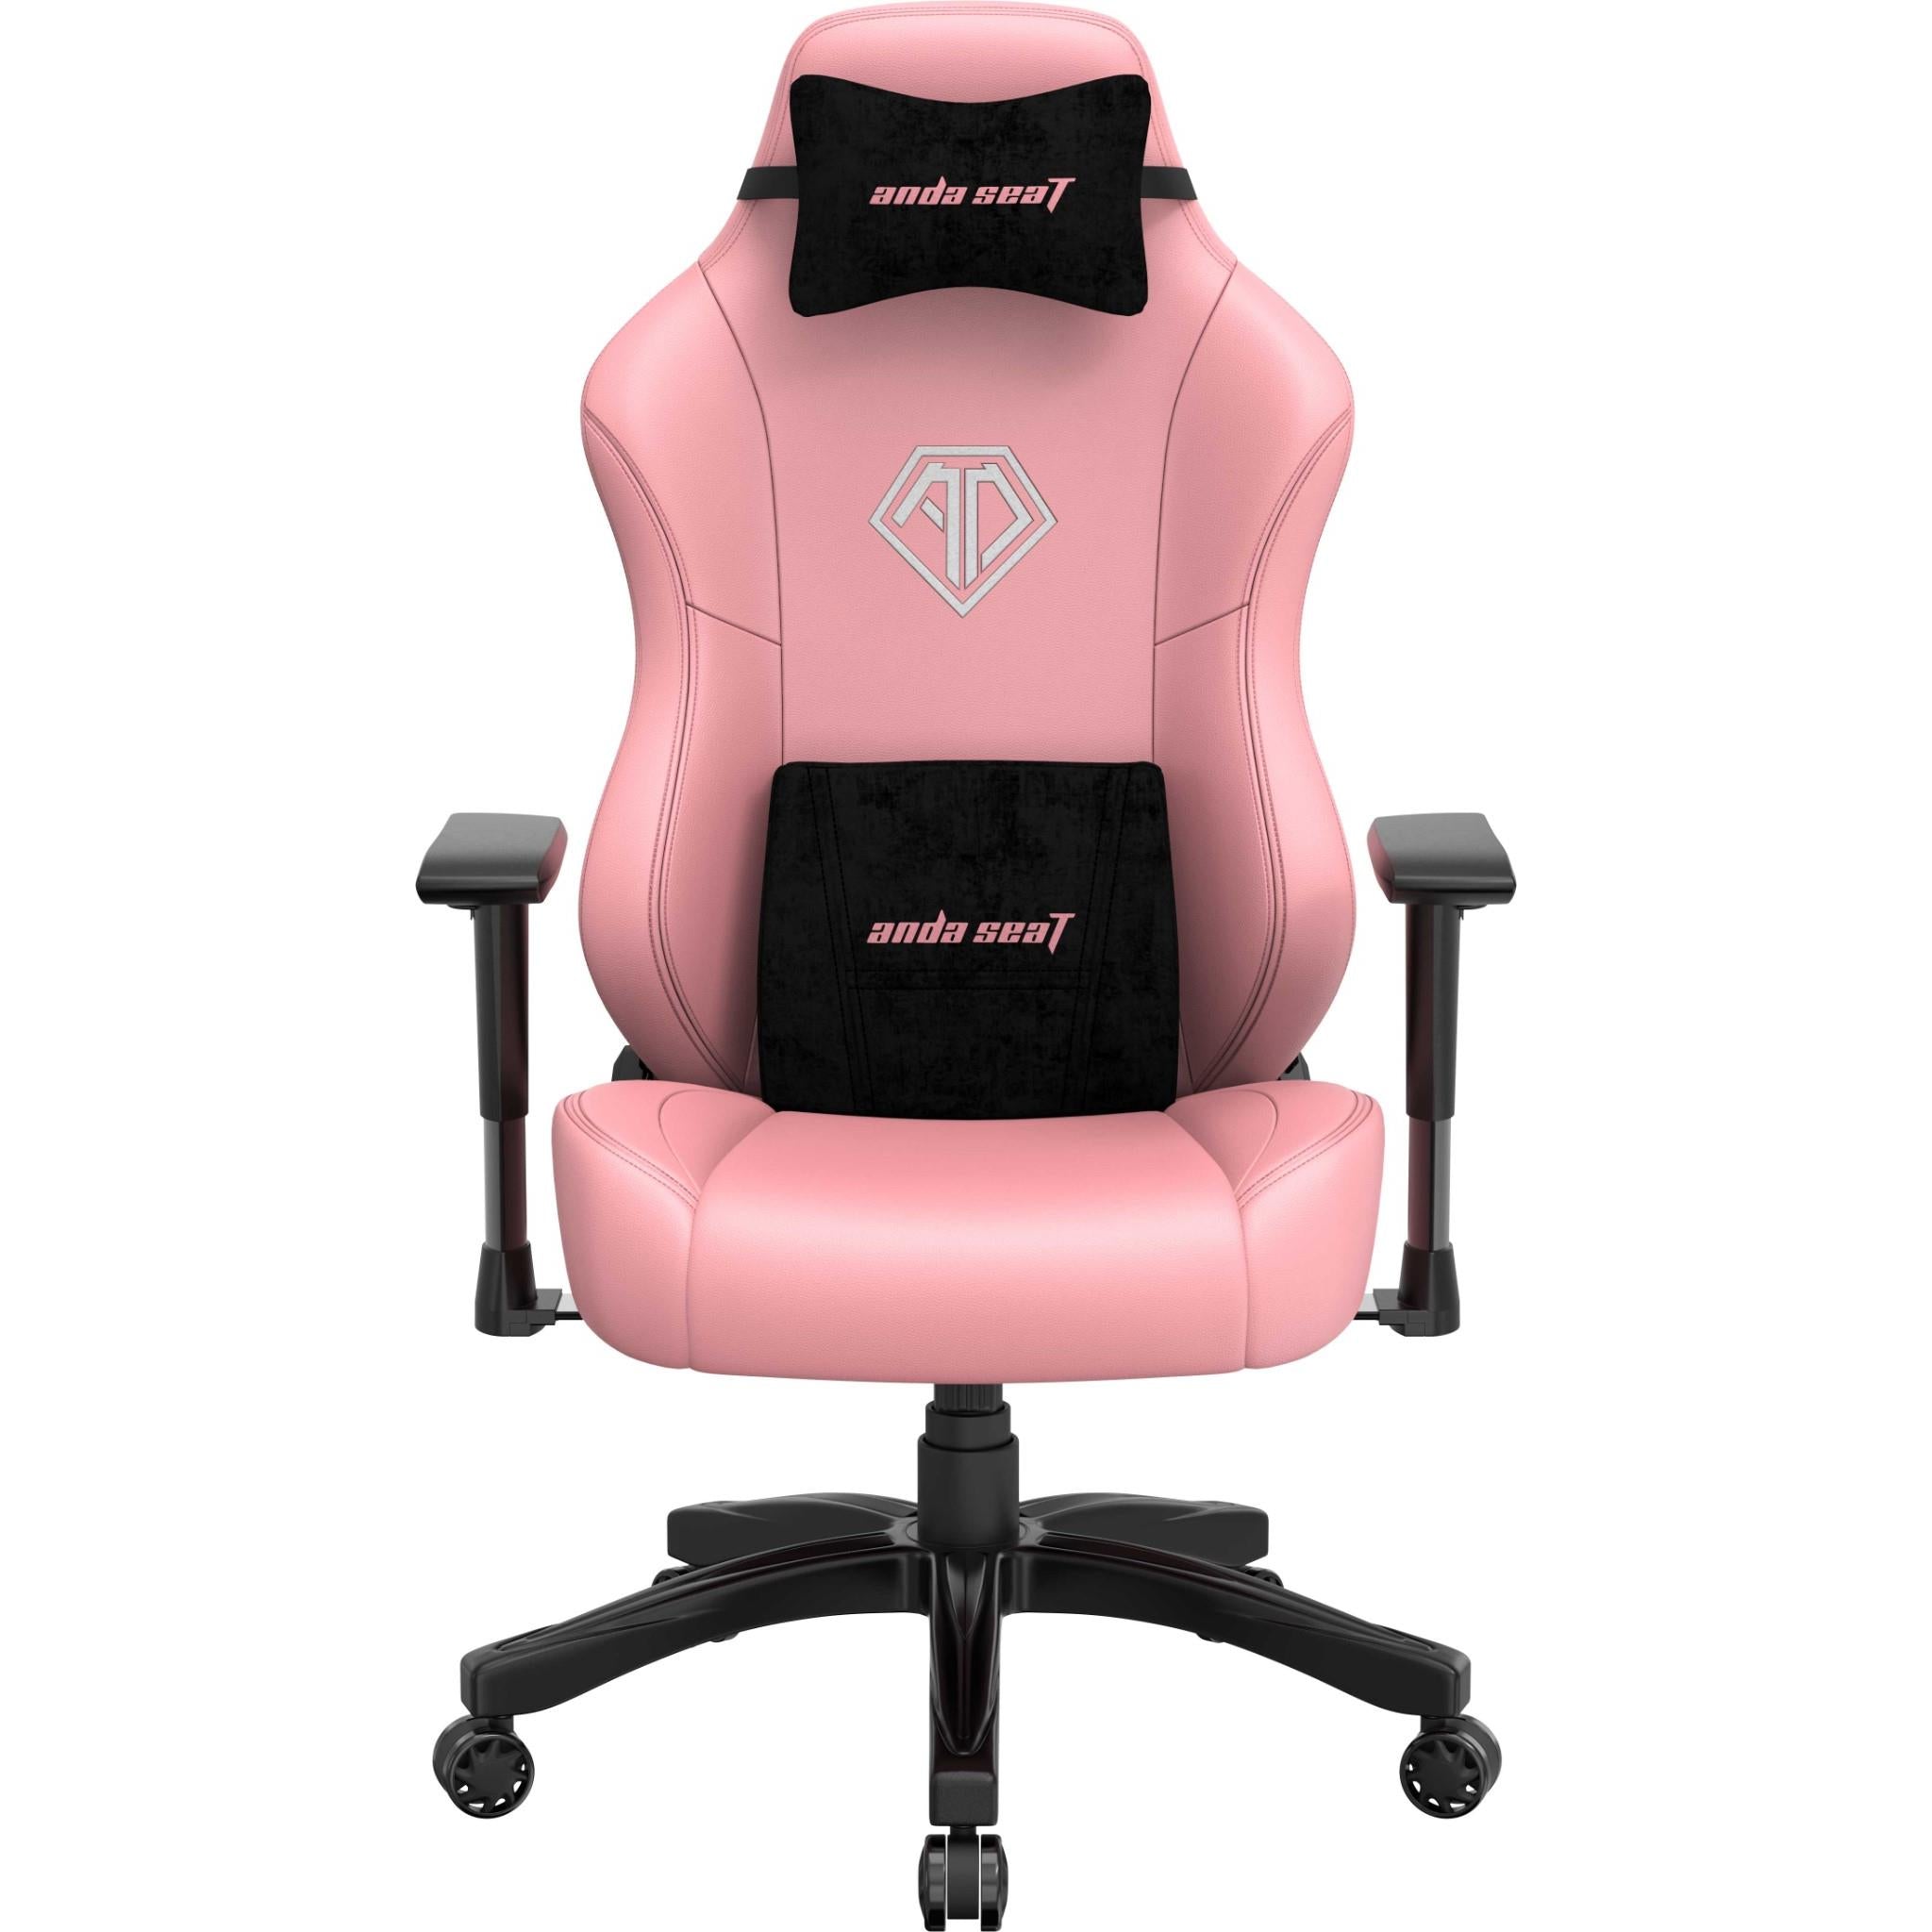 anda seat phantom 3 gaming chair pink (large)